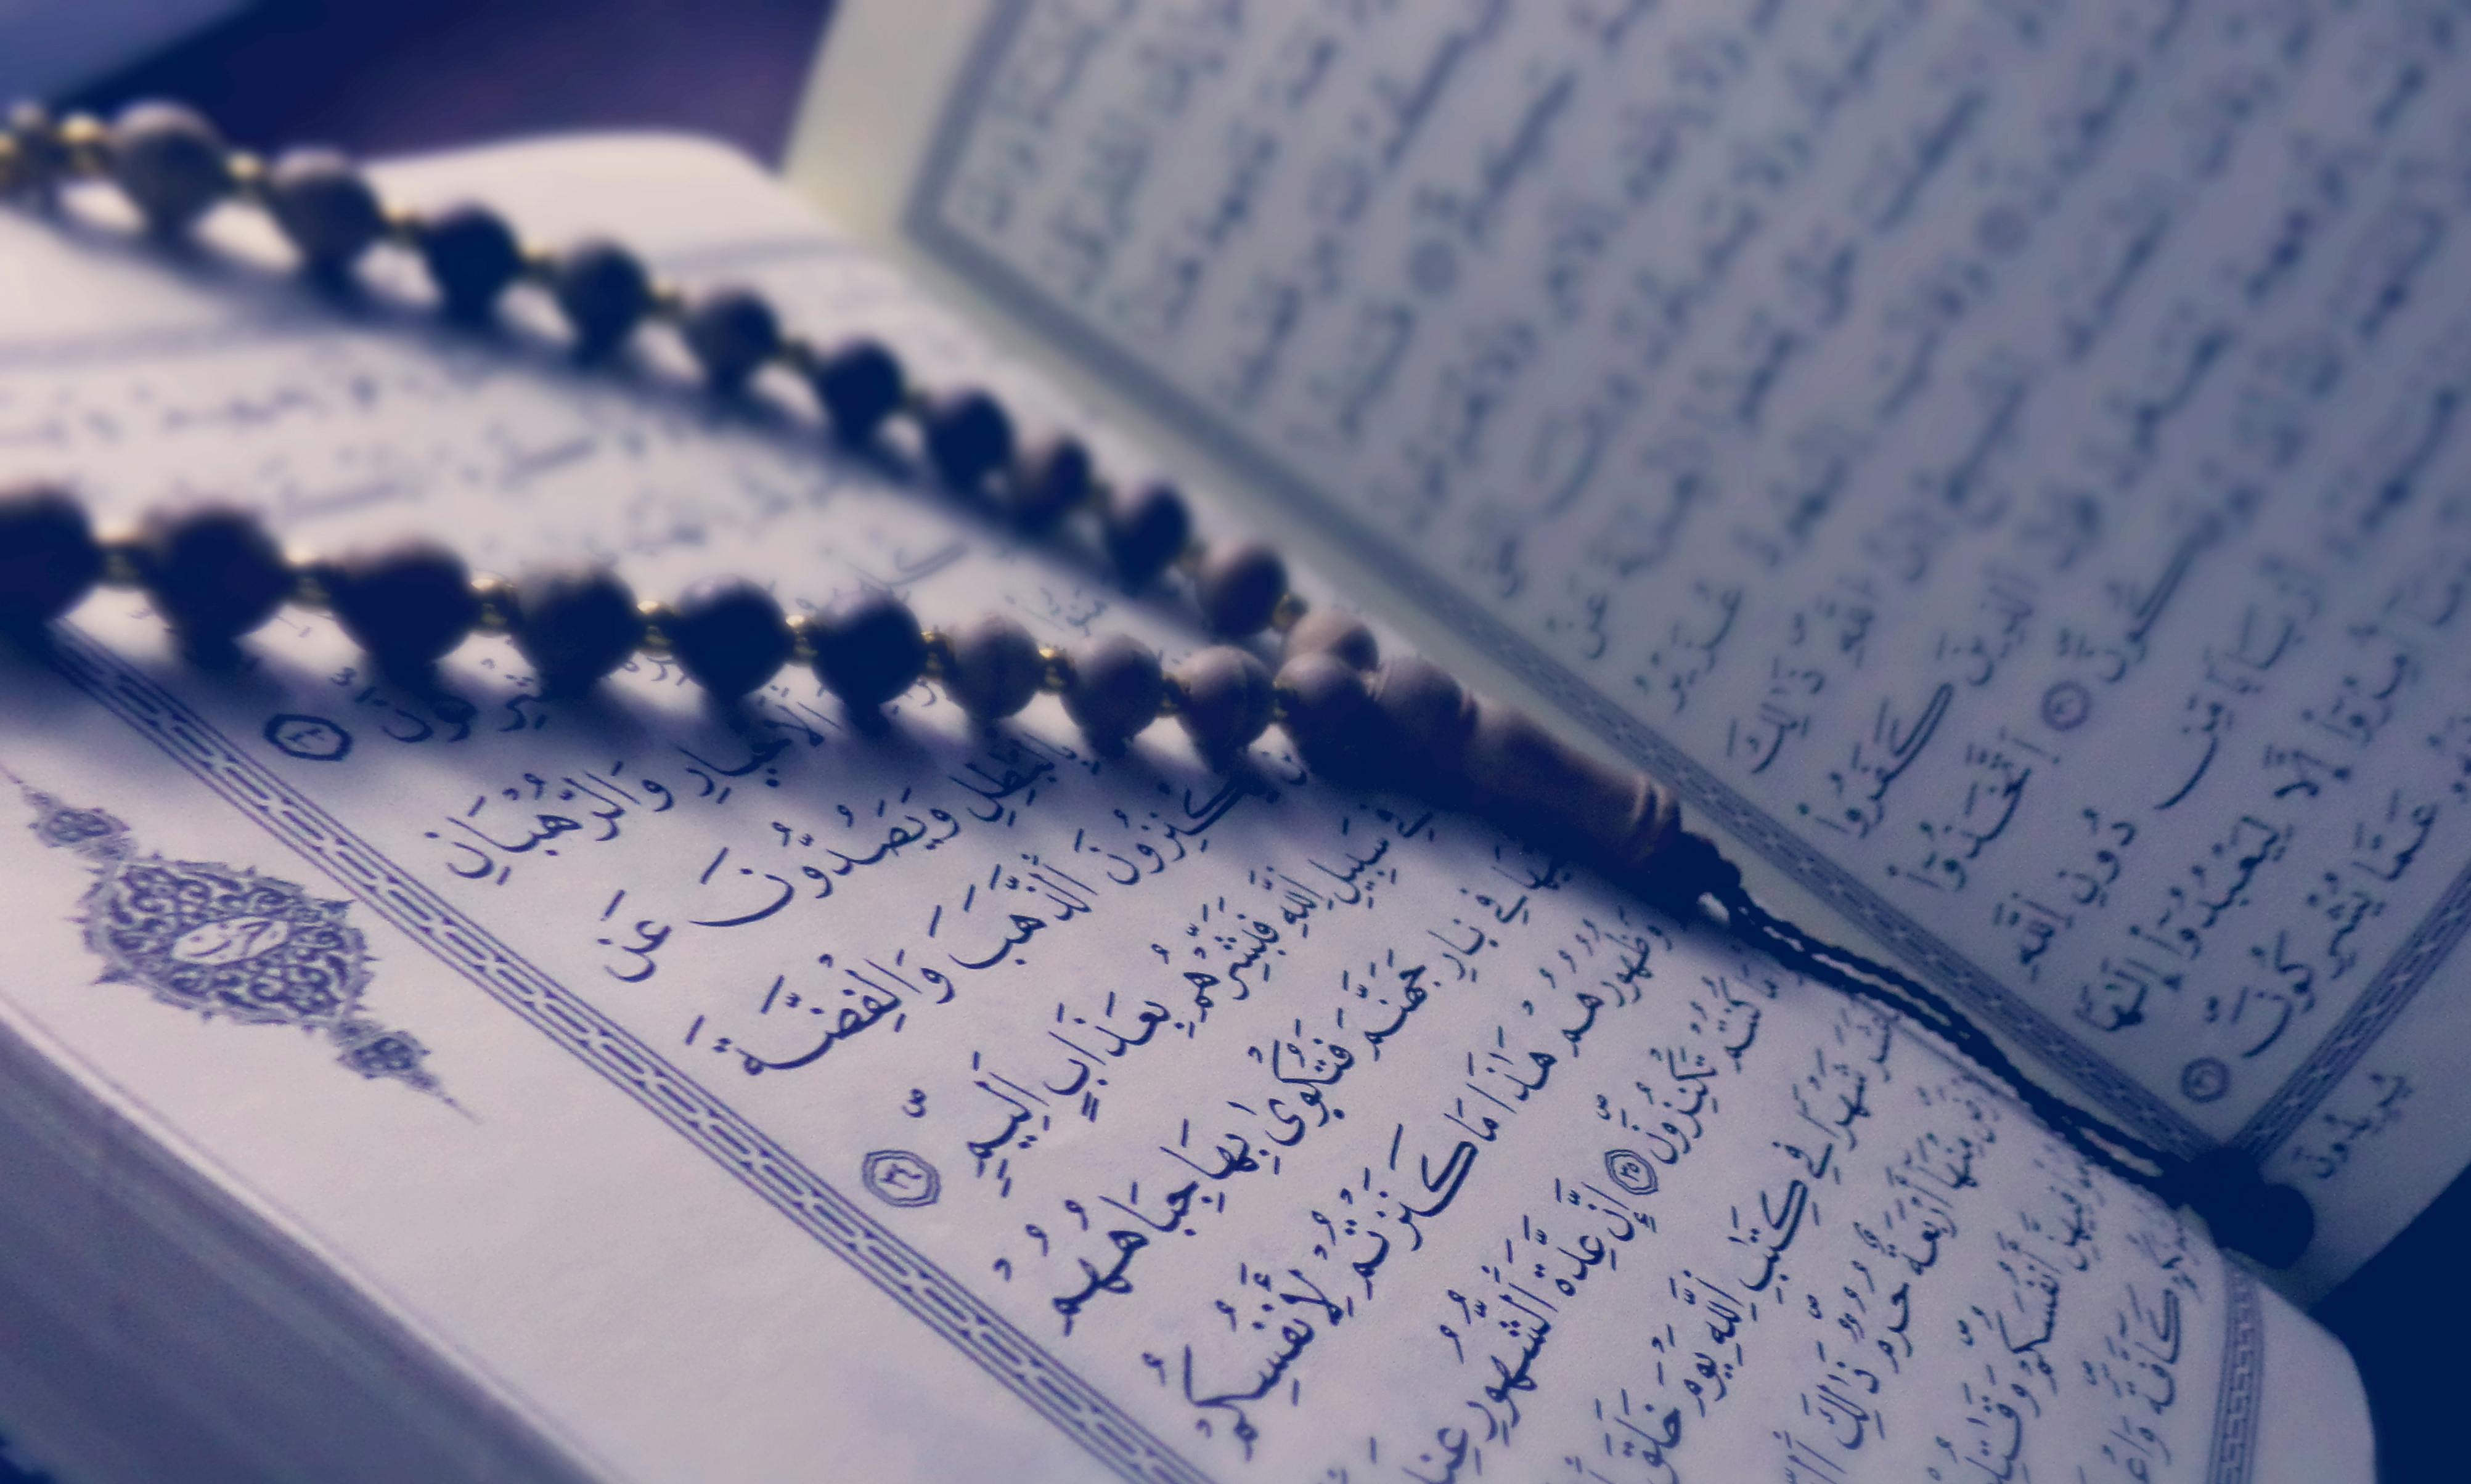 Tải ngay những bức ảnh và hình ảnh Quran miễn phí tốt nhất trên internet. Bộ sưu tập đa dạng về Kinh Quran sẽ đưa bạn đến với một không gian thiêng liêng và tĩnh lặng. Từ những hình ảnh tĩnh đến những hình ảnh động, tất cả đều sẽ mang đến cho bạn những trải nghiệm hài lòng và cảm xúc đẹp.